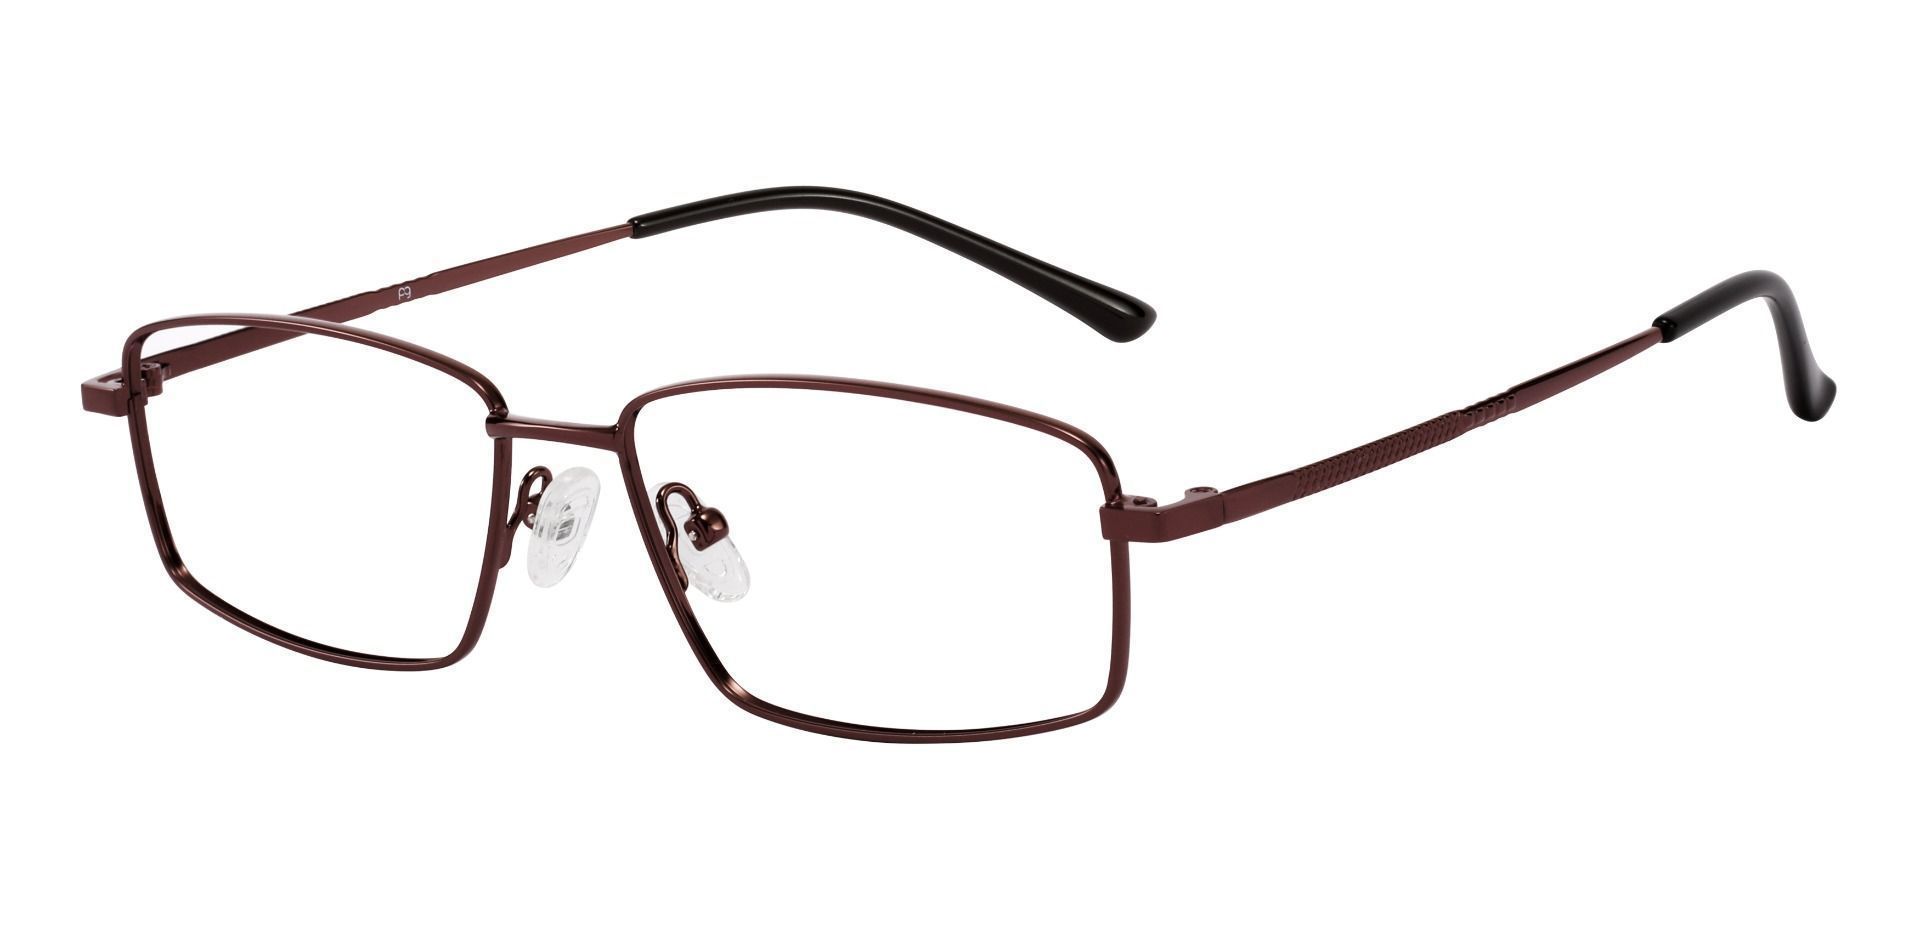 Fargo Rectangle Prescription Glasses - Brown